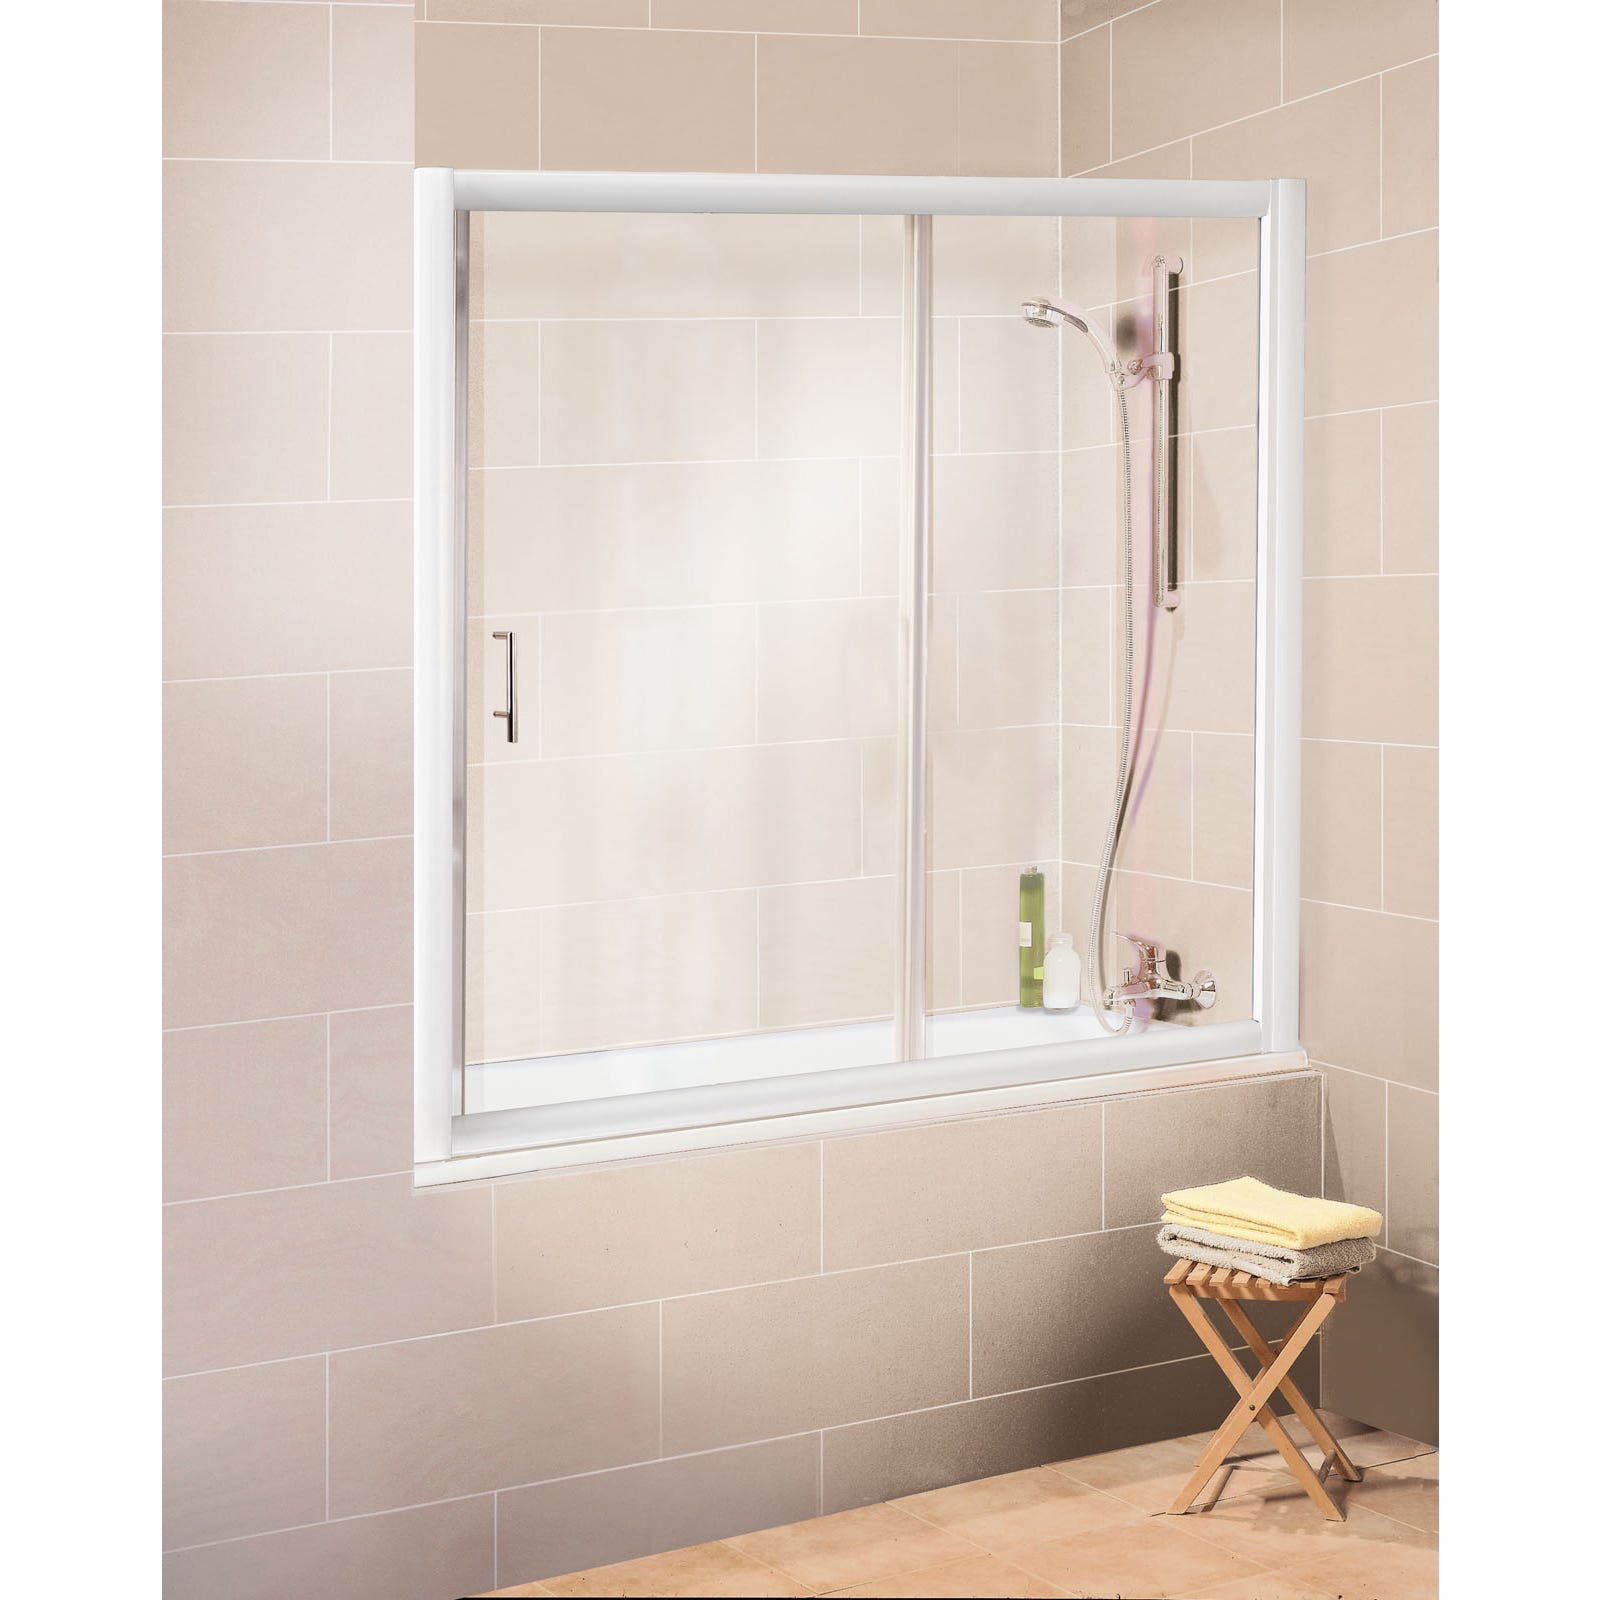 Schulte pare-baignoire coulissant en niche, 150 x 150 cm, paroi de baignoire mobile extensible, 2 volets, verre transparent, profilé blanc 0